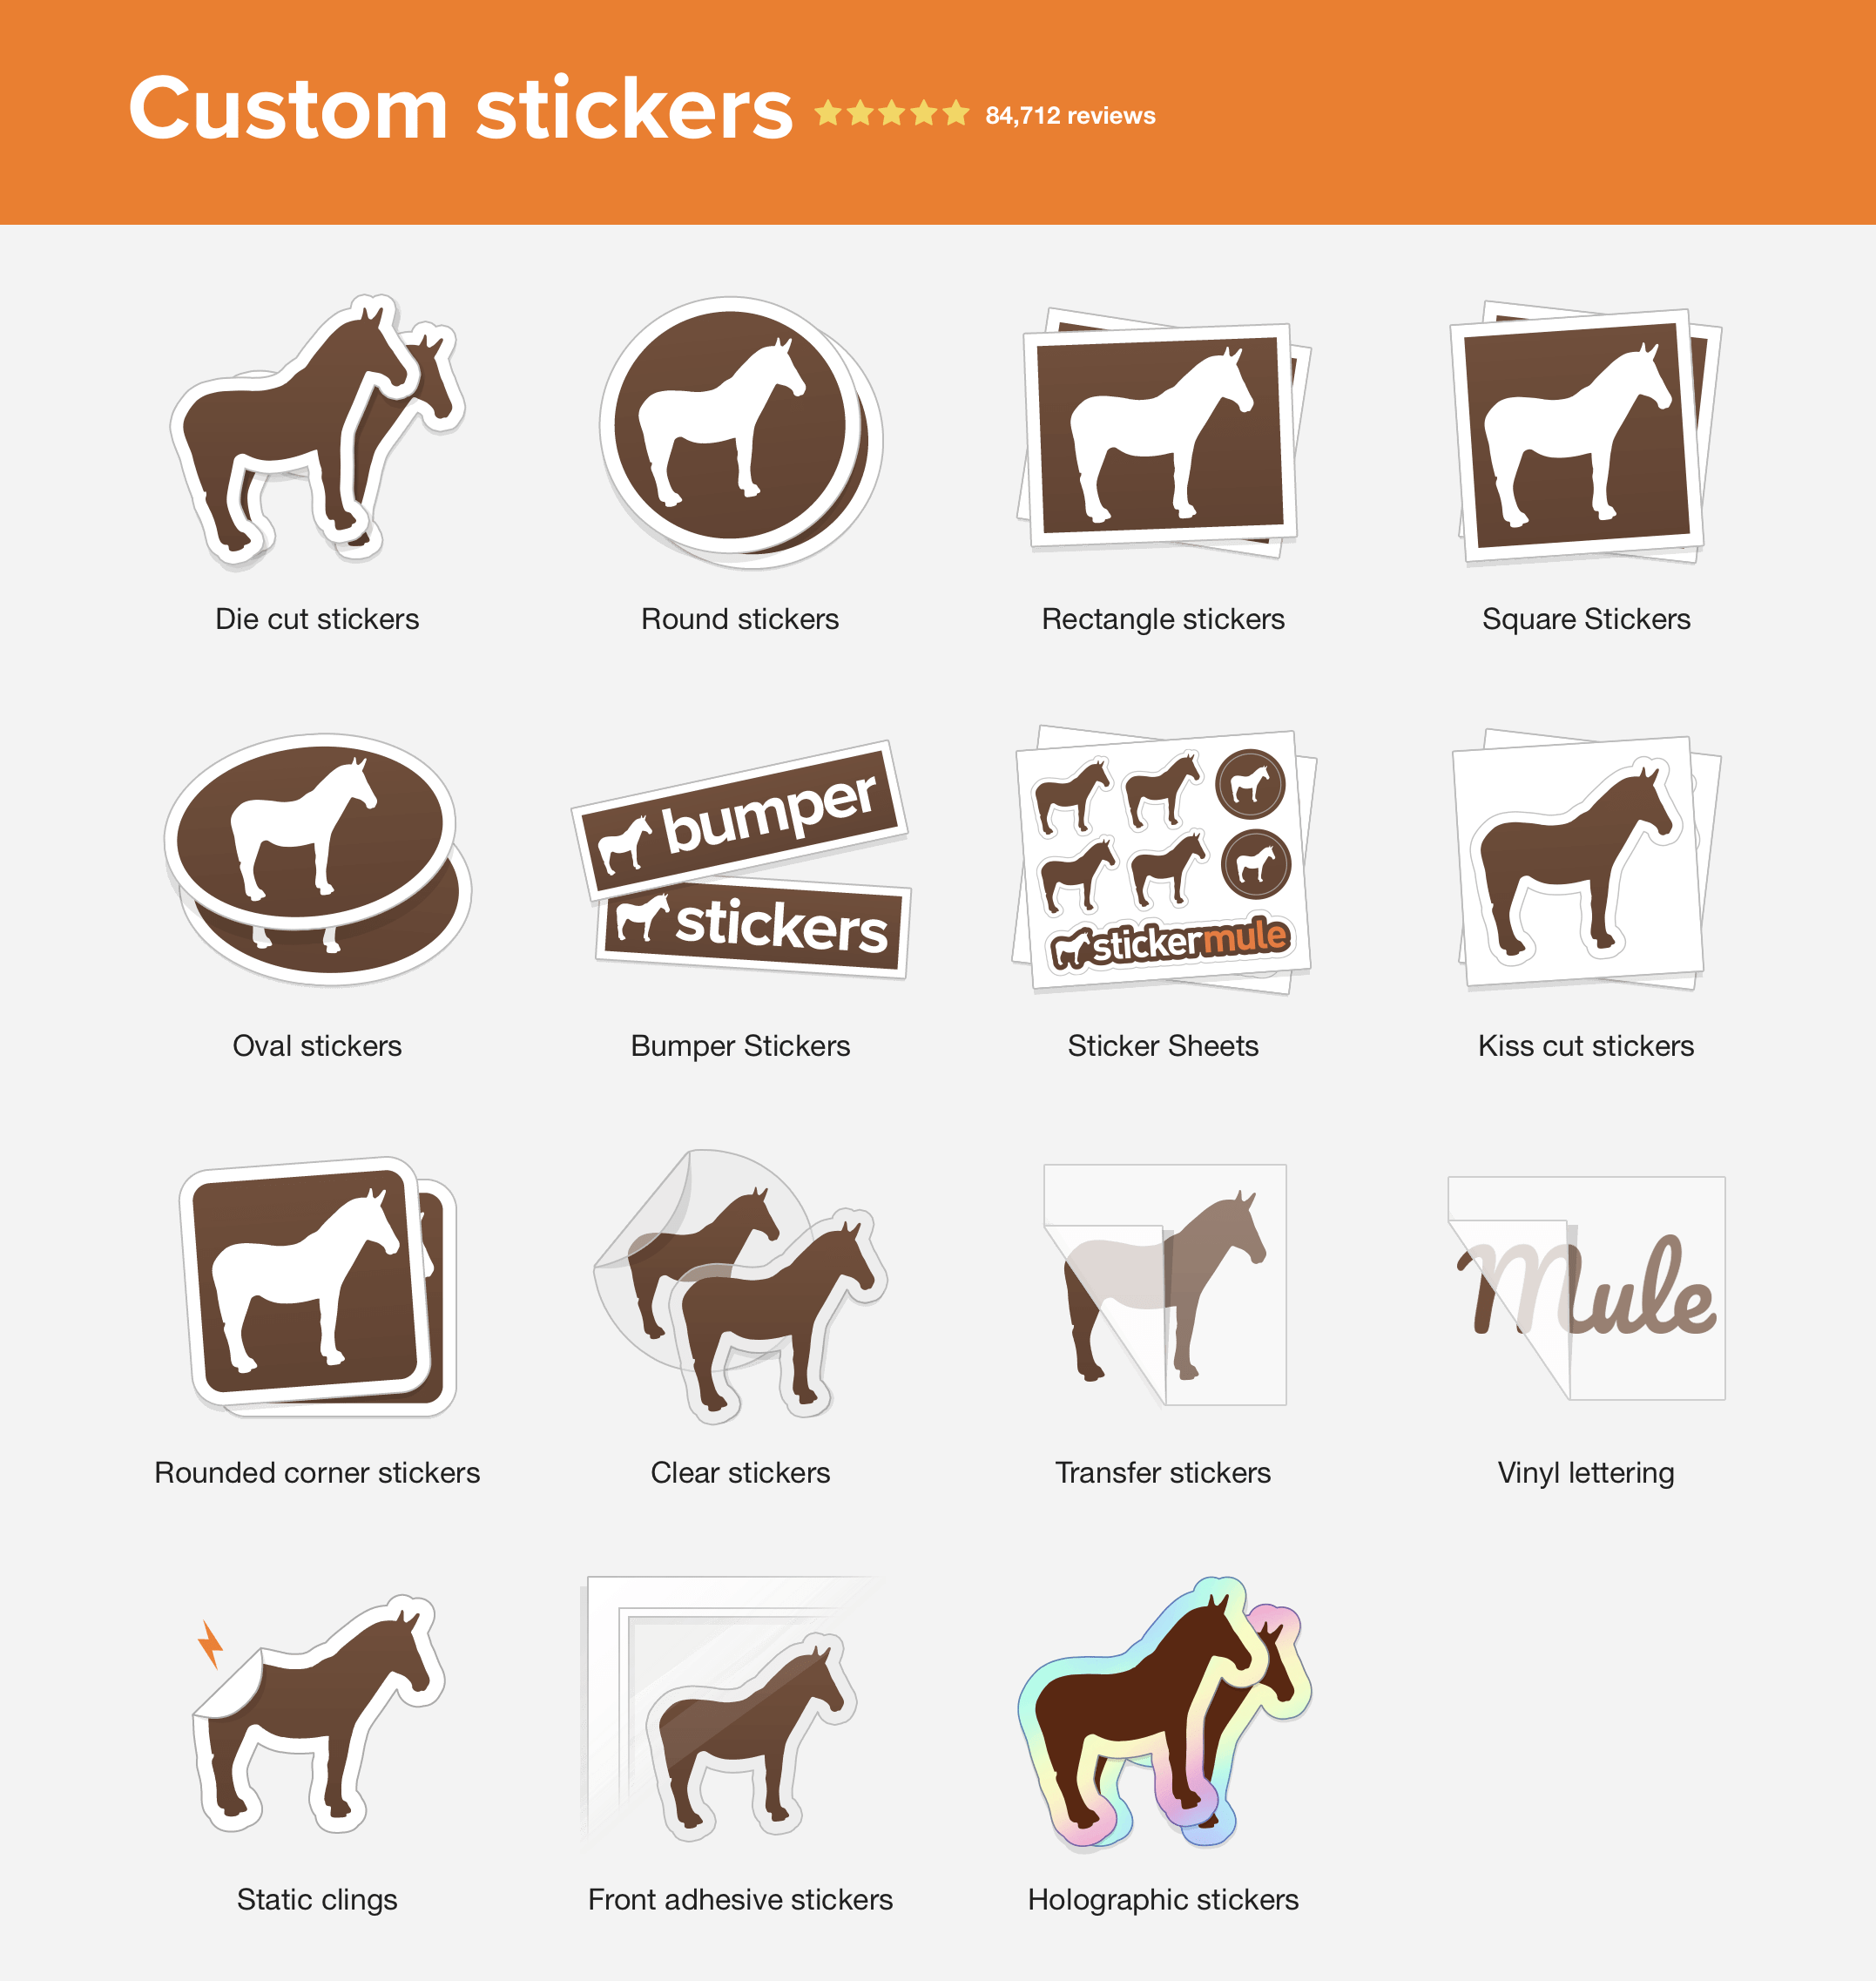 Les stickers VSCO par Sticker Mule